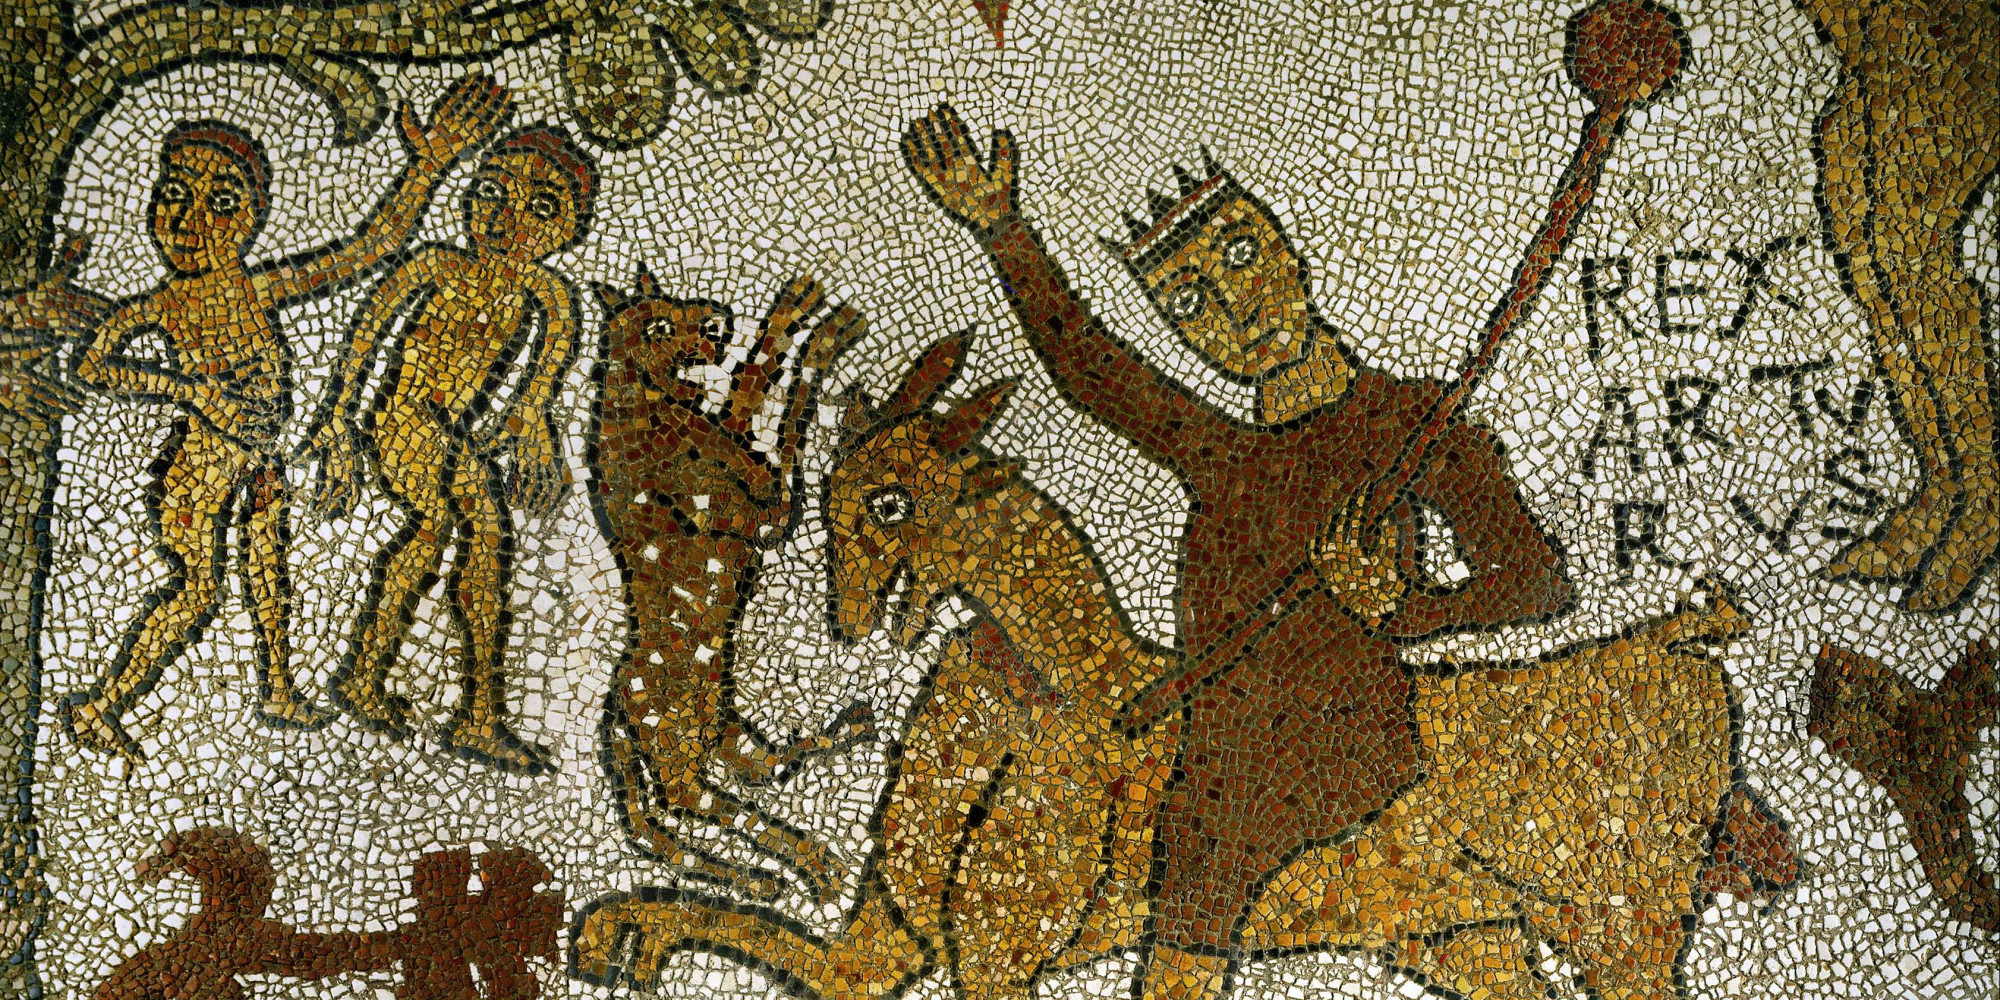  Arturus Rex, le roi Arthur combattant le Chapalu (?) Cathédrale d’Otrante 